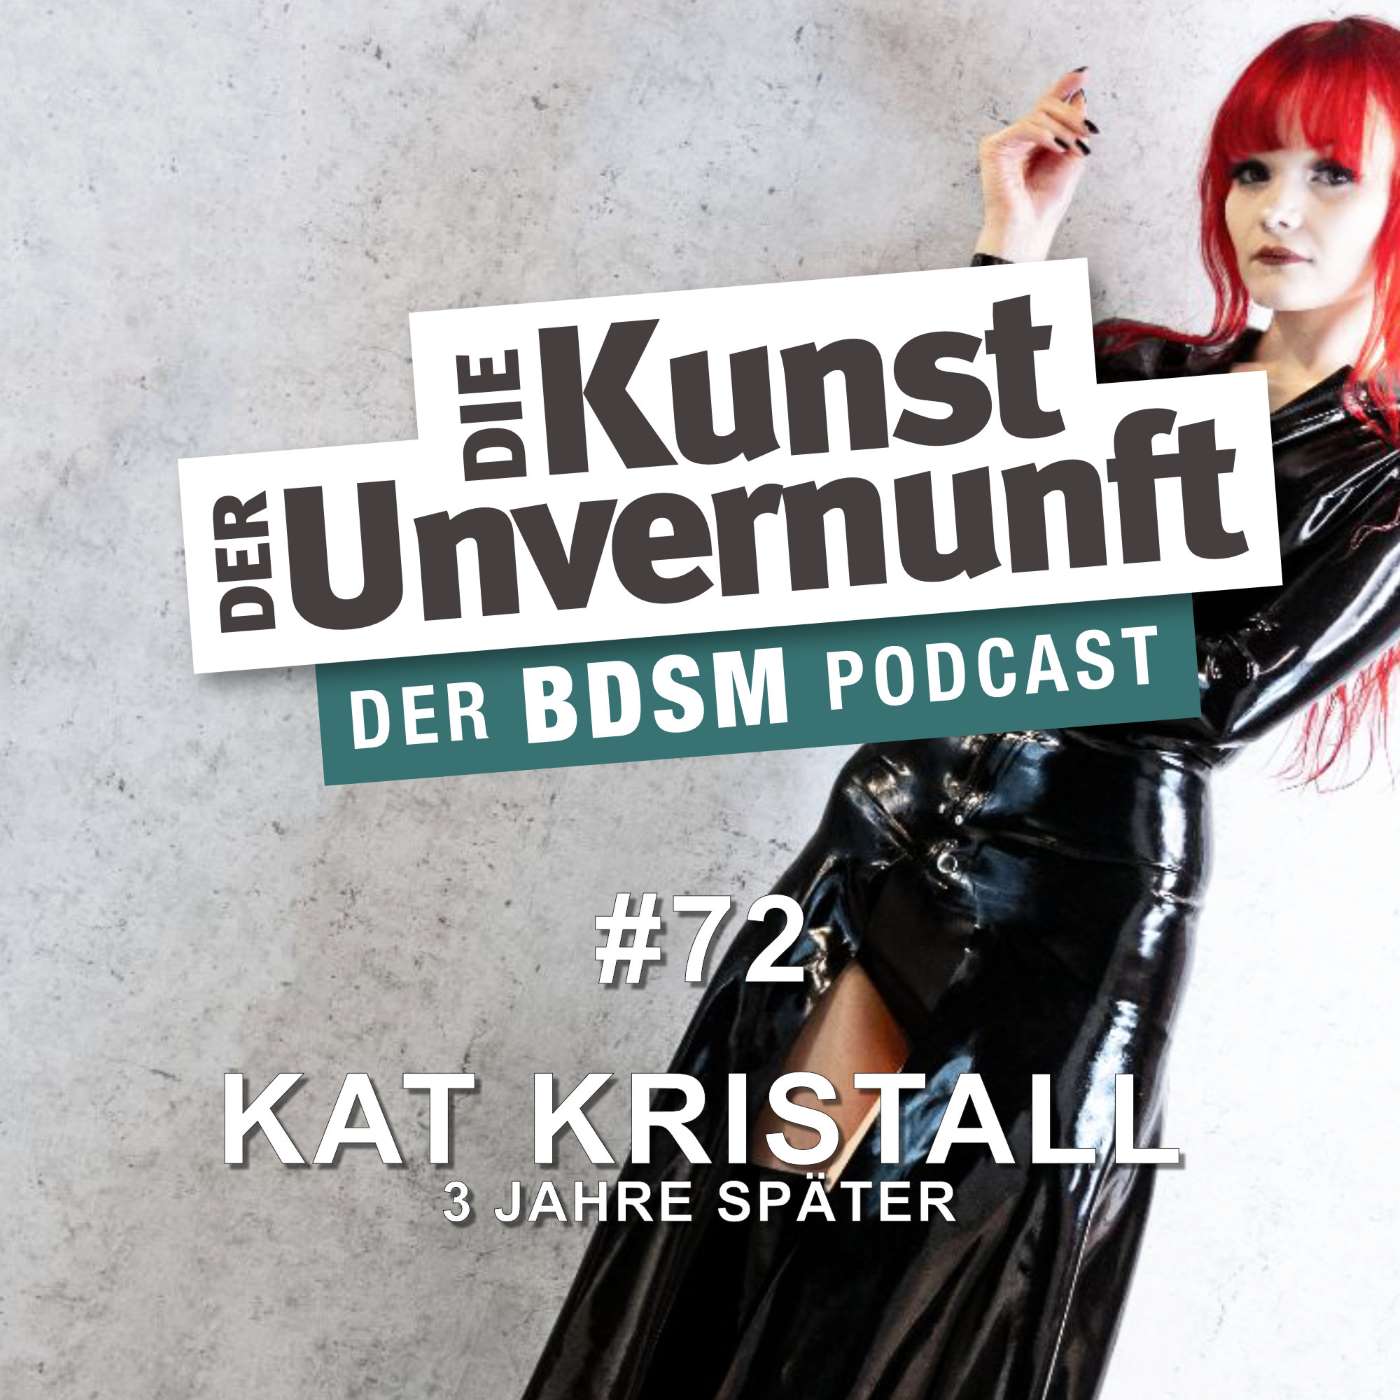 Kat Kristall - 3 Jahre später